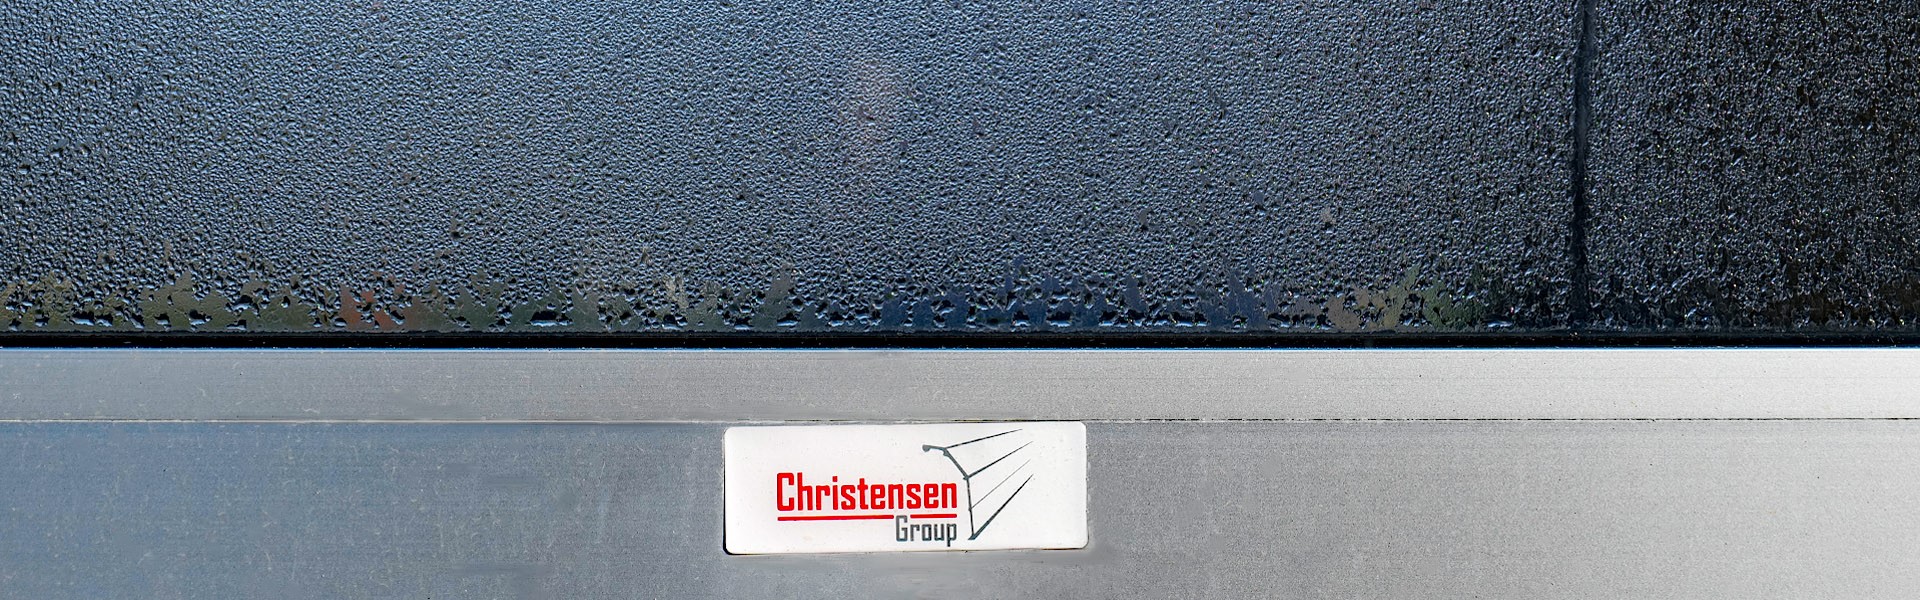 Karriere bei der Christensen Group, CH Tortechnik